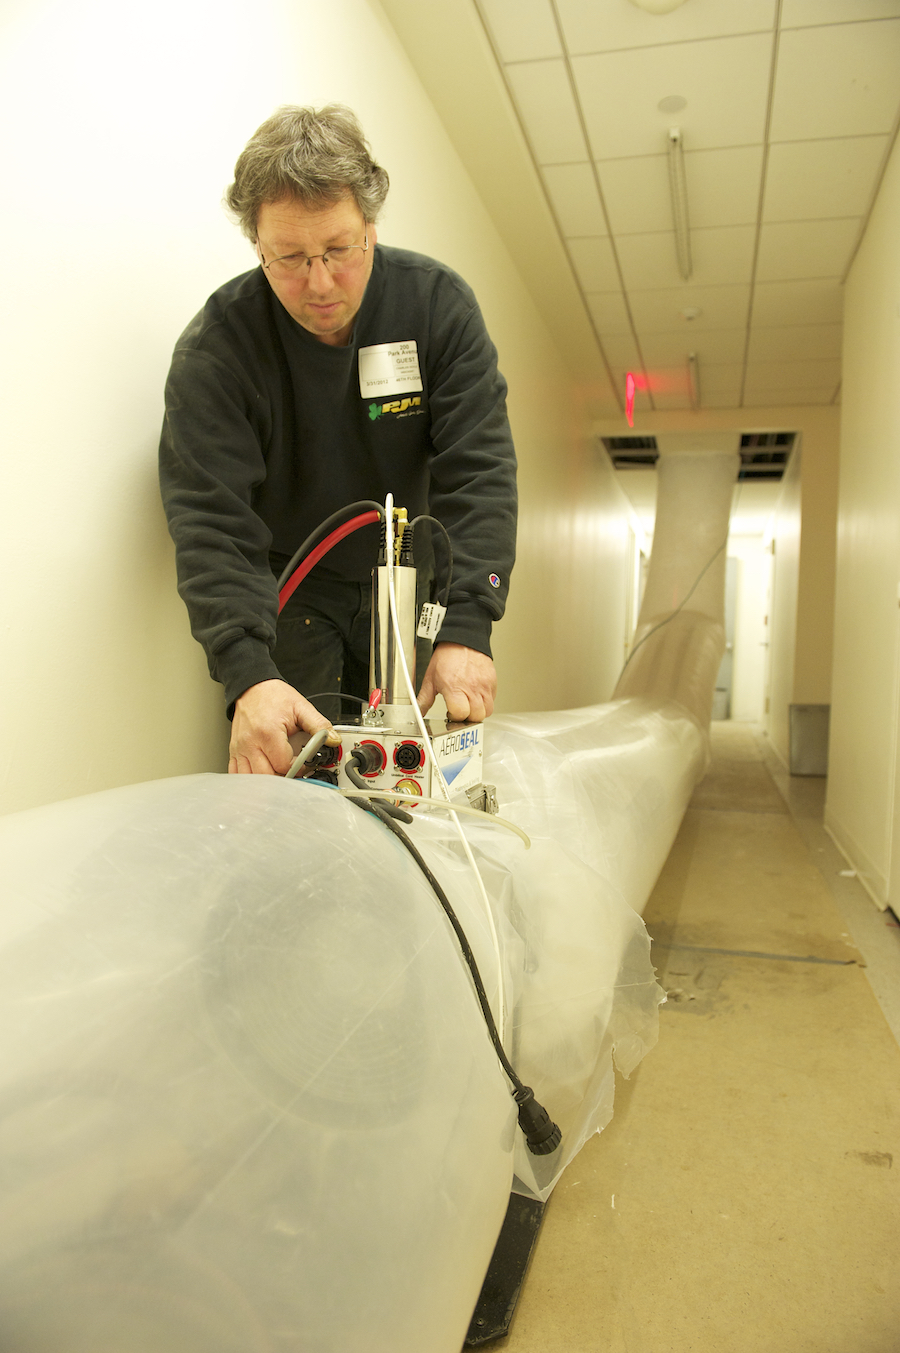 OSU duct sealing technology